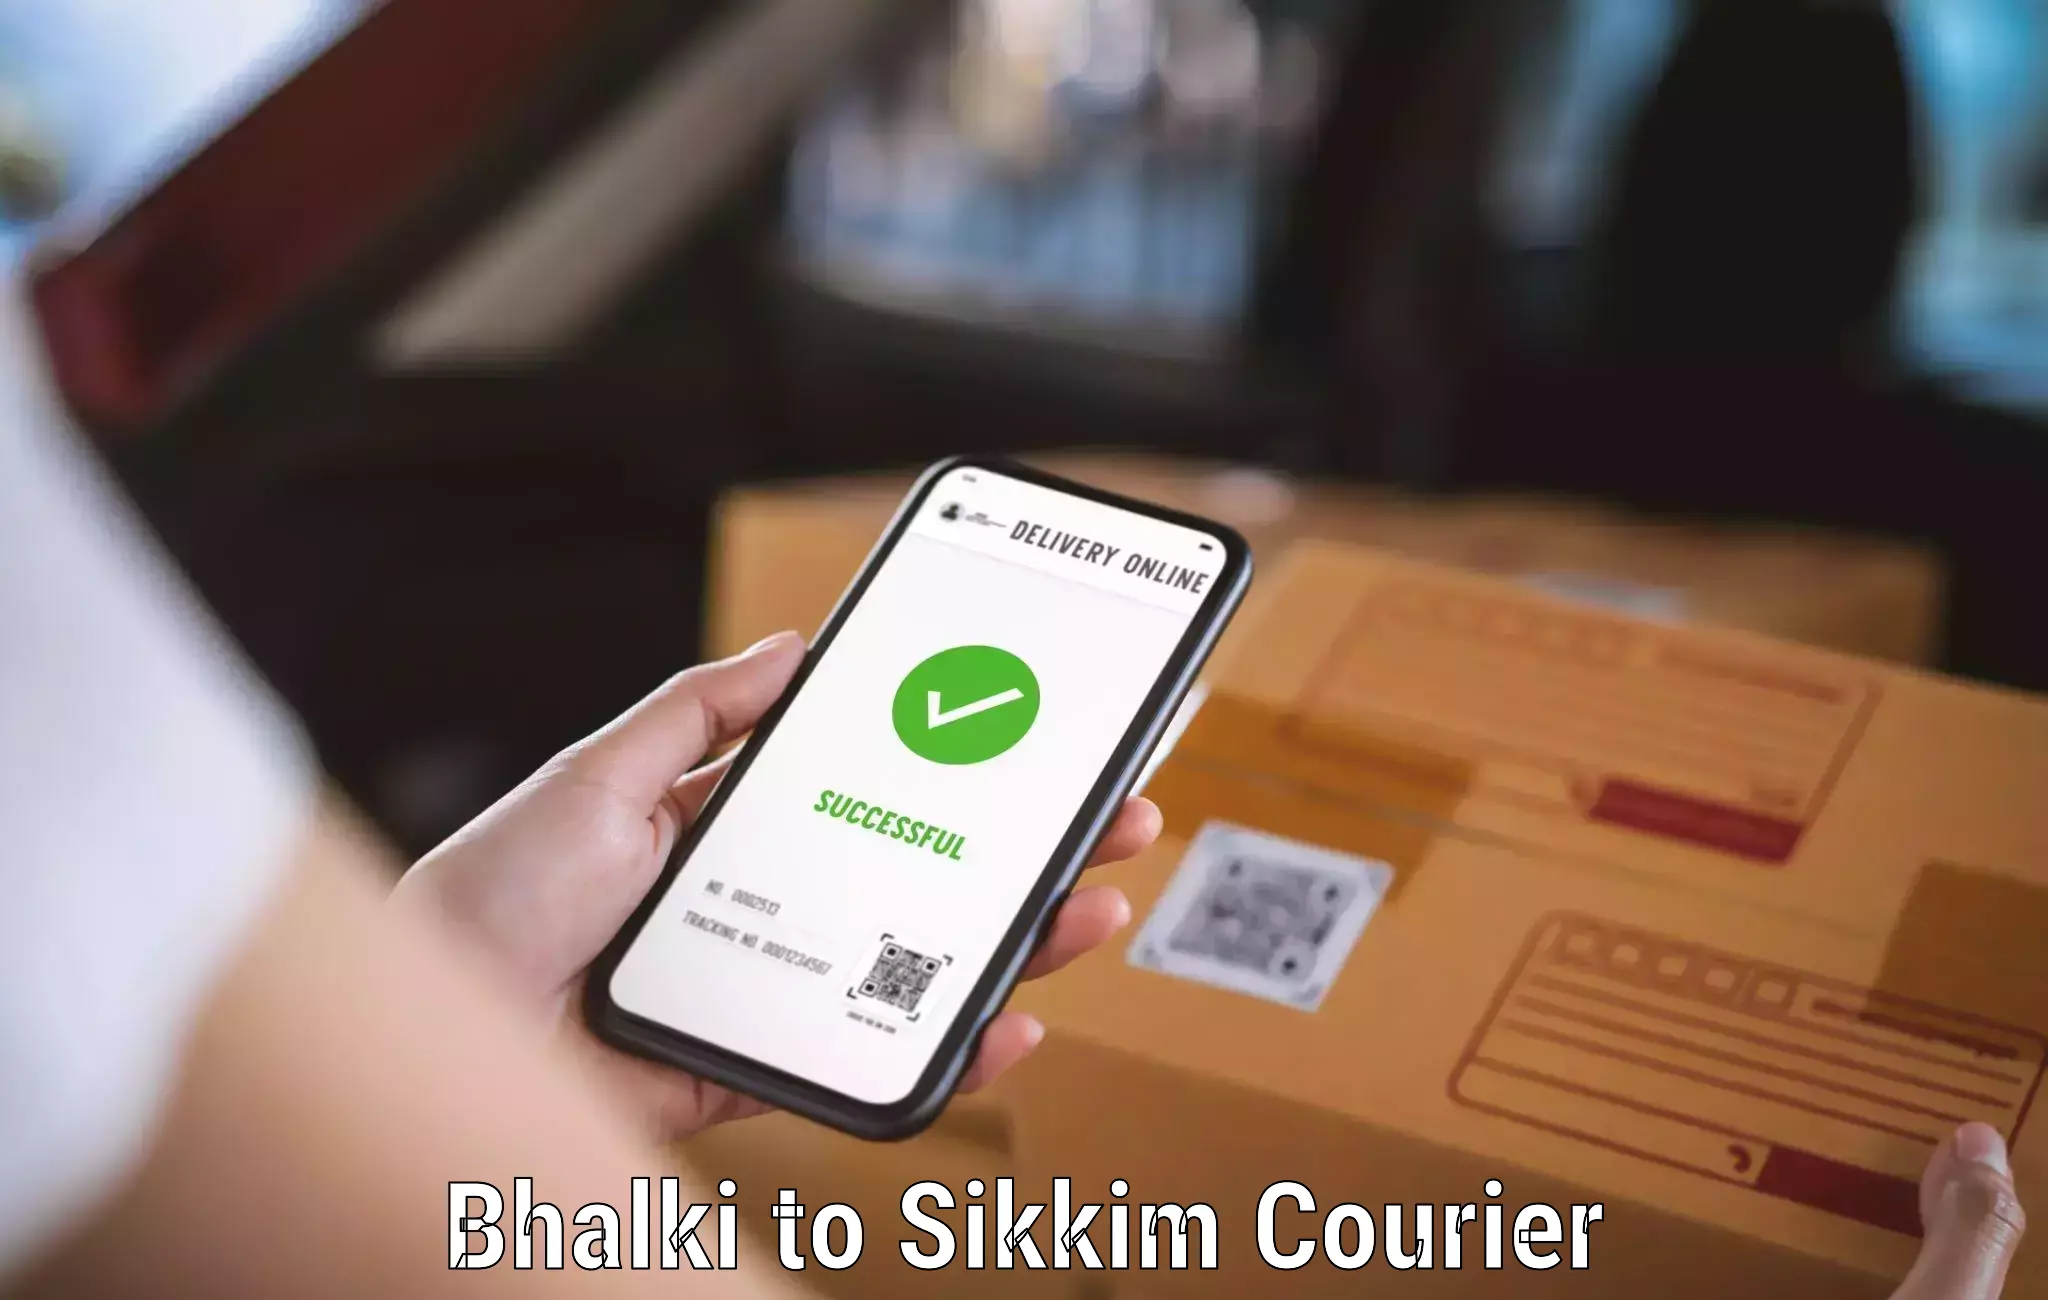 Efficient freight service Bhalki to Sikkim